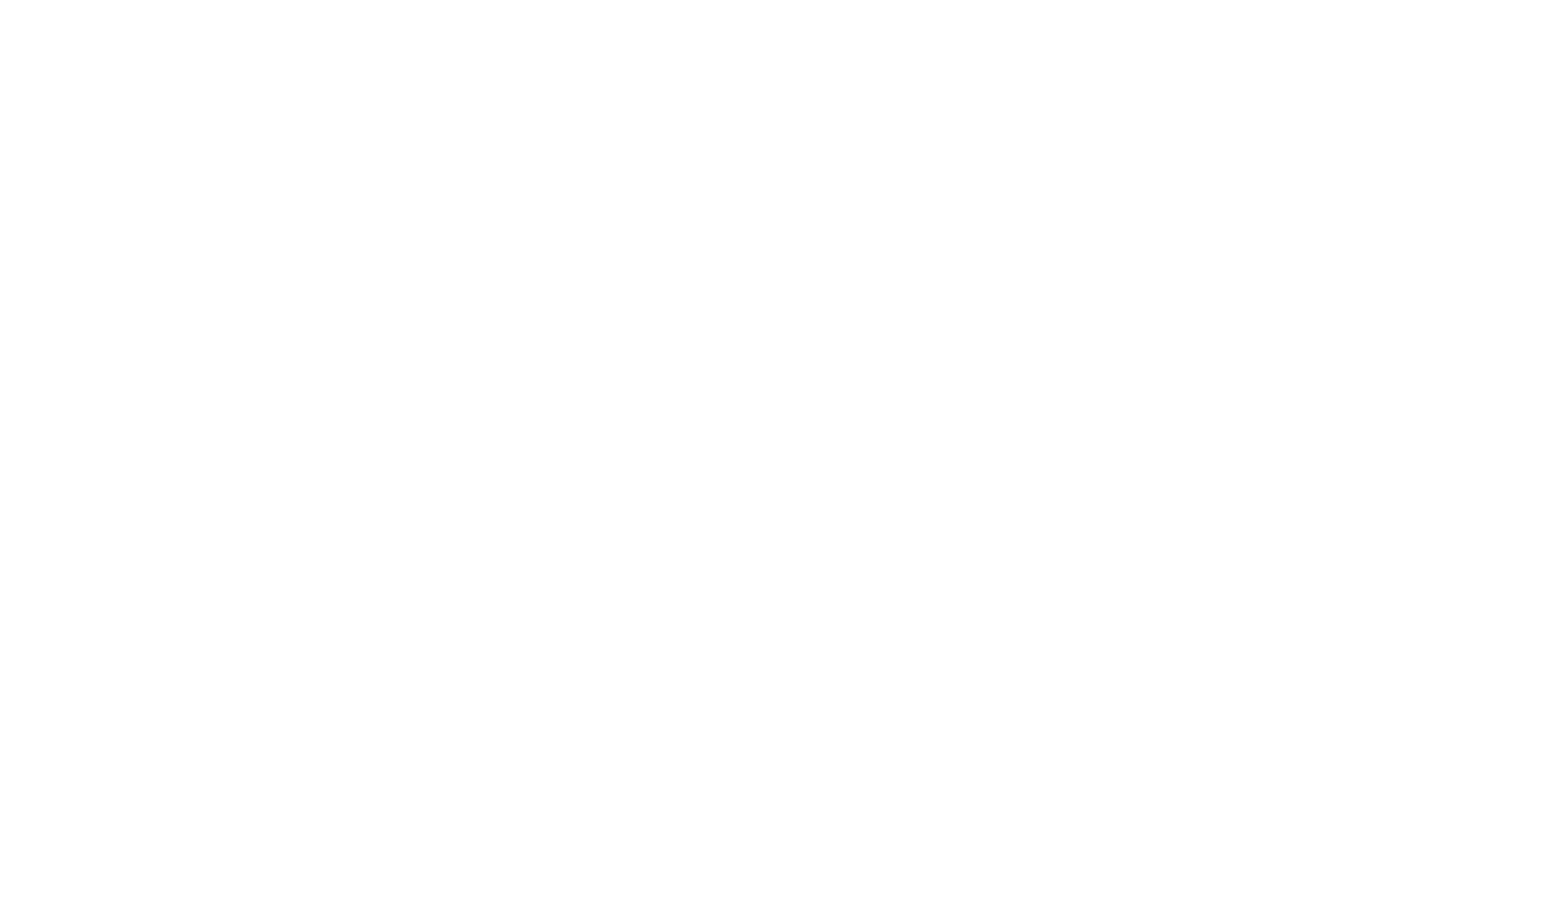 Funny T-Shirts design "Pillow Princess Tee"